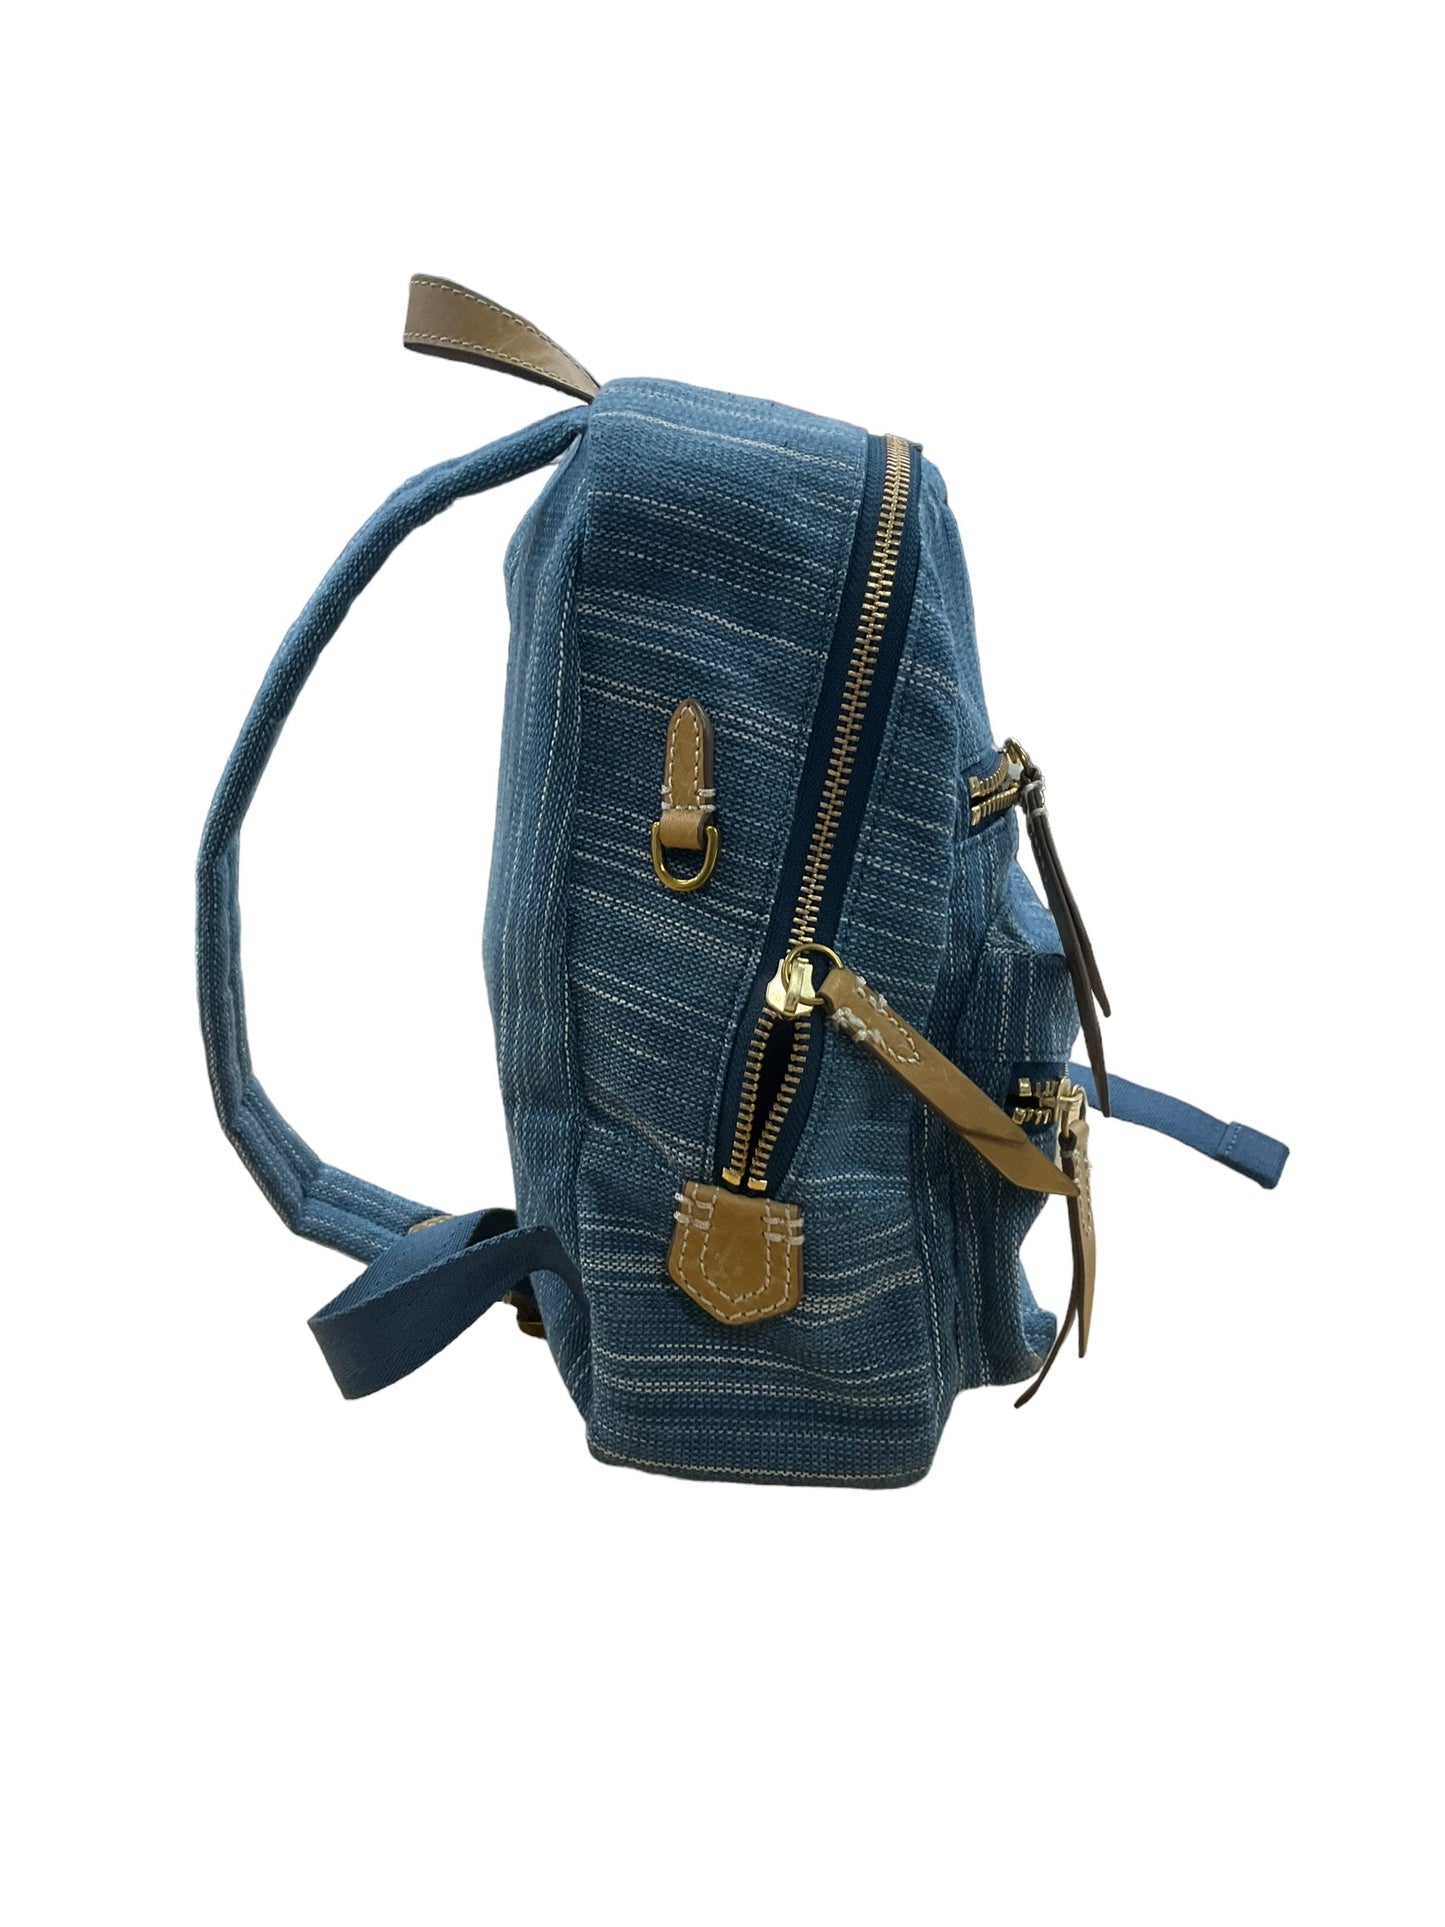 Backpack Designer By Frye  Size: Medium